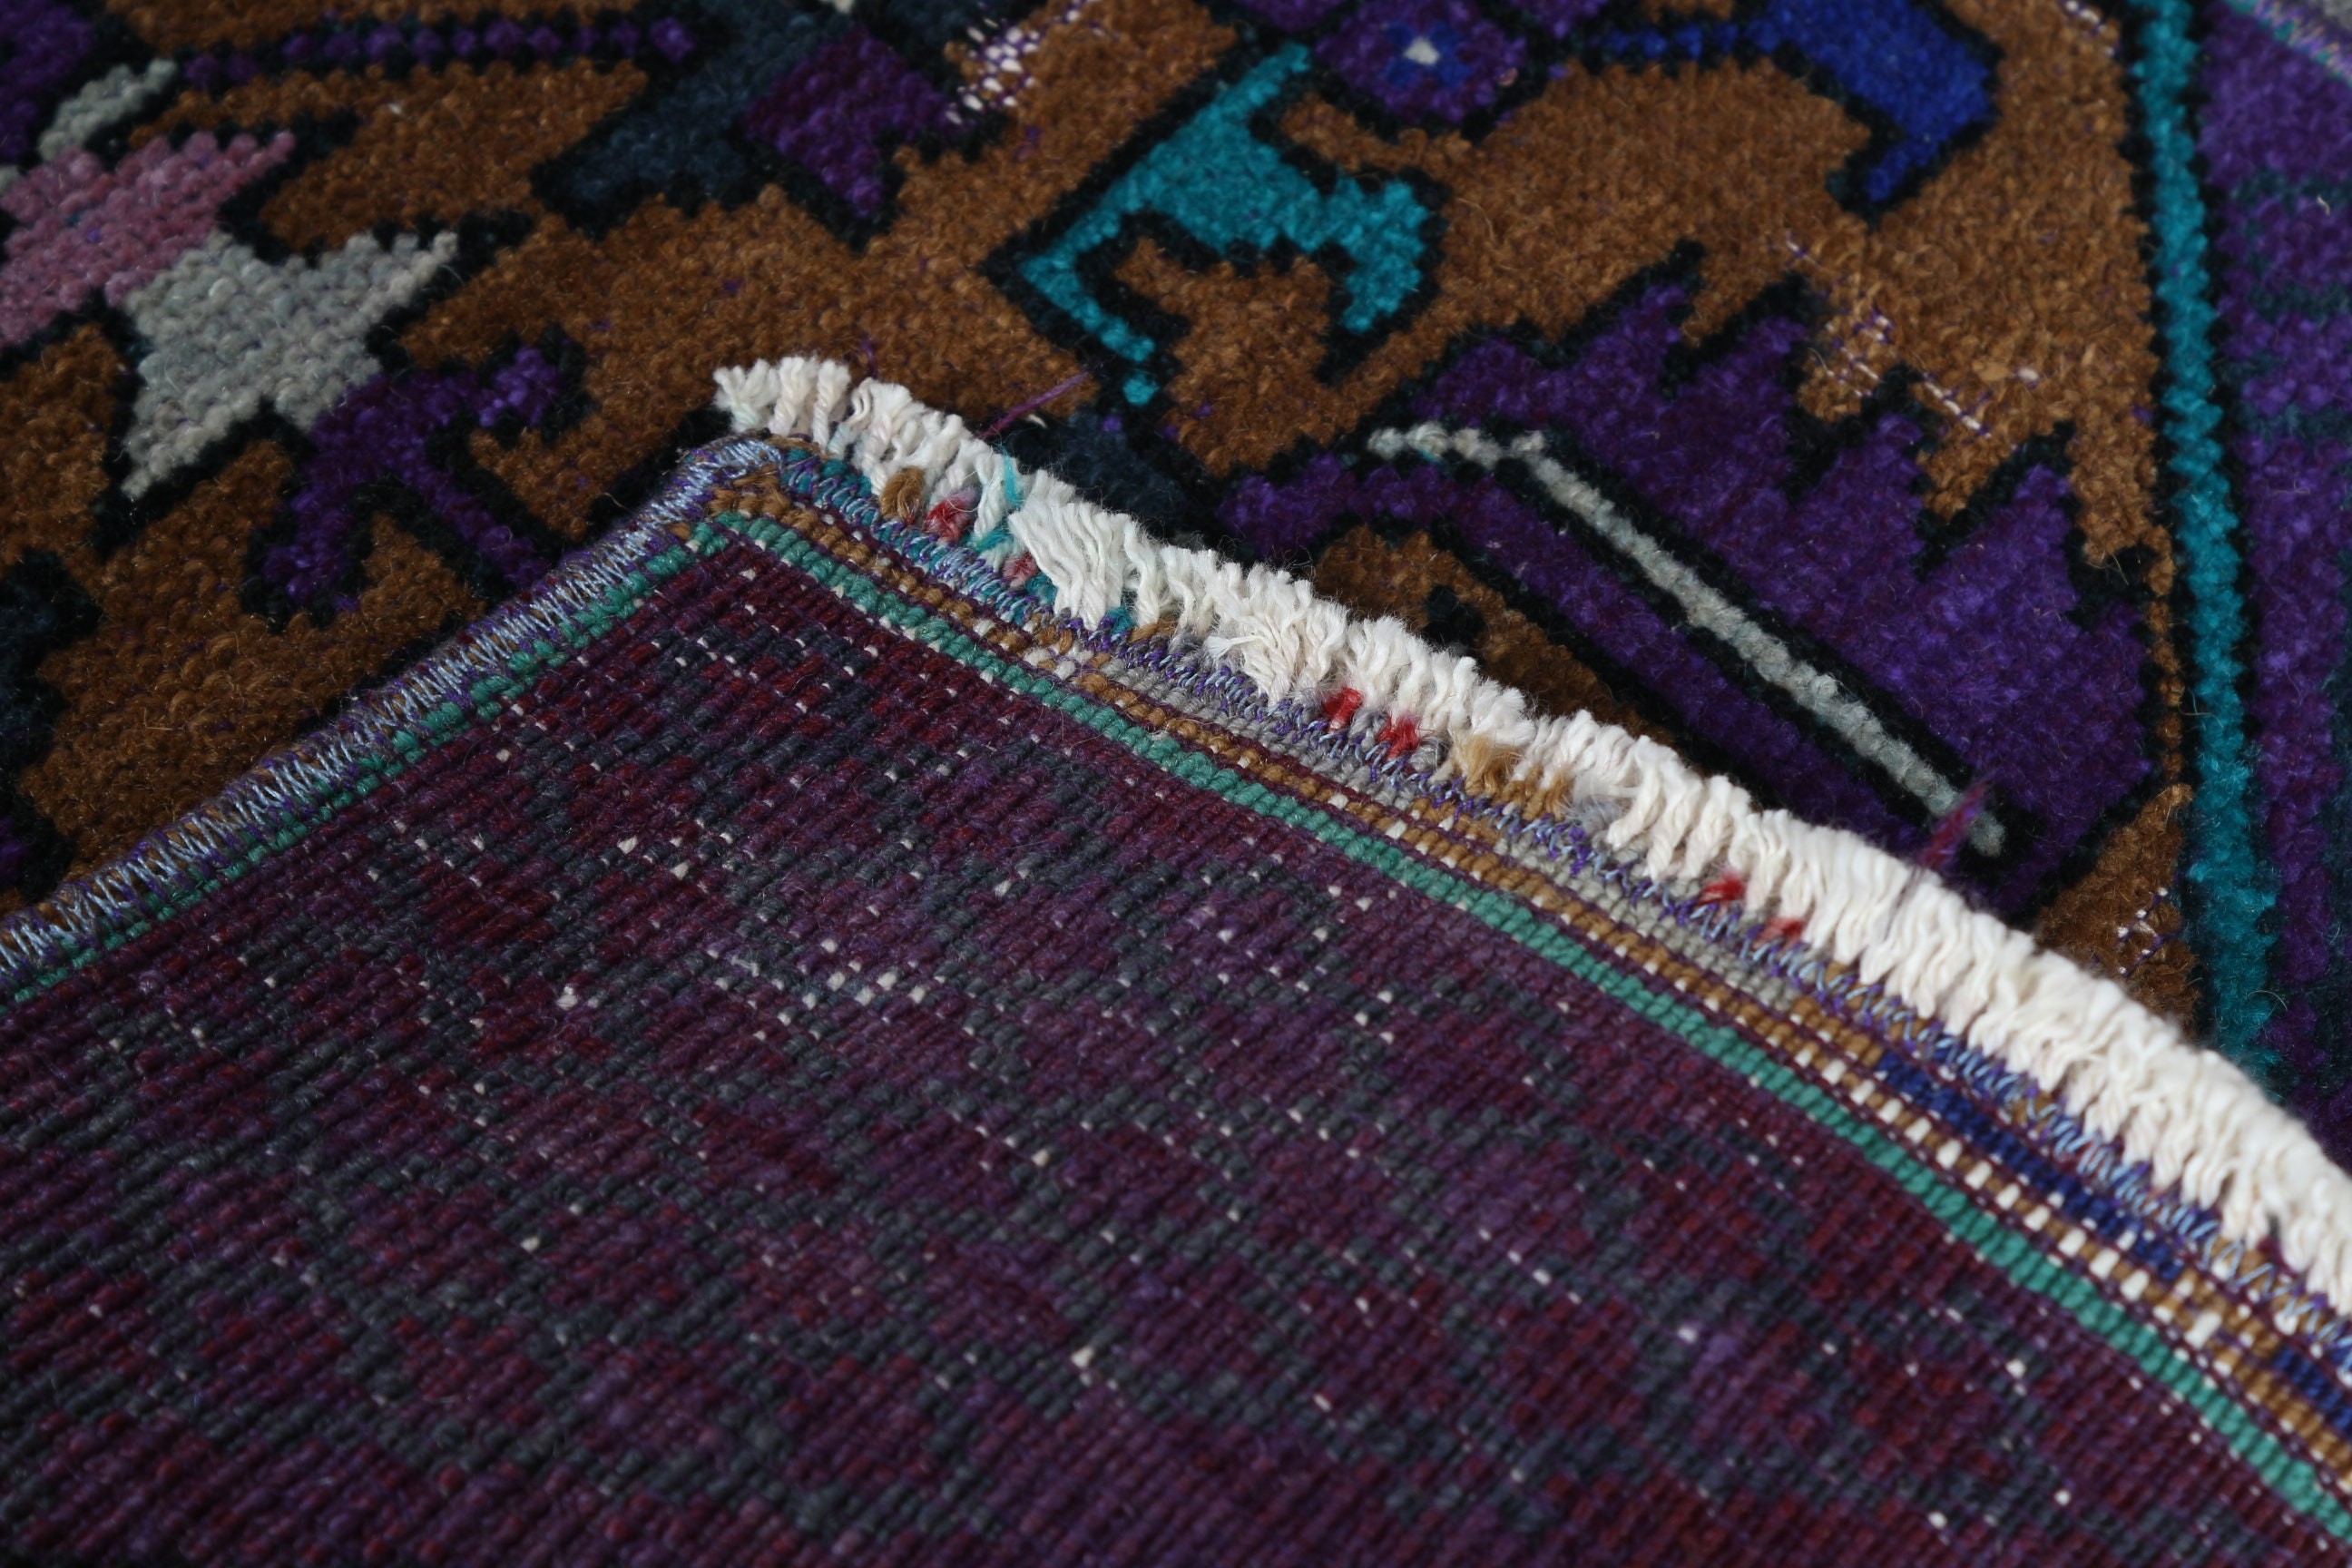 Vintage Rug, Door Mat Rug, Purple Moroccan Rug, Oriental Rugs, 1.2x3.1 ft Small Rug, Turkish Rugs, Wall Hanging Rug, Anatolian Rug